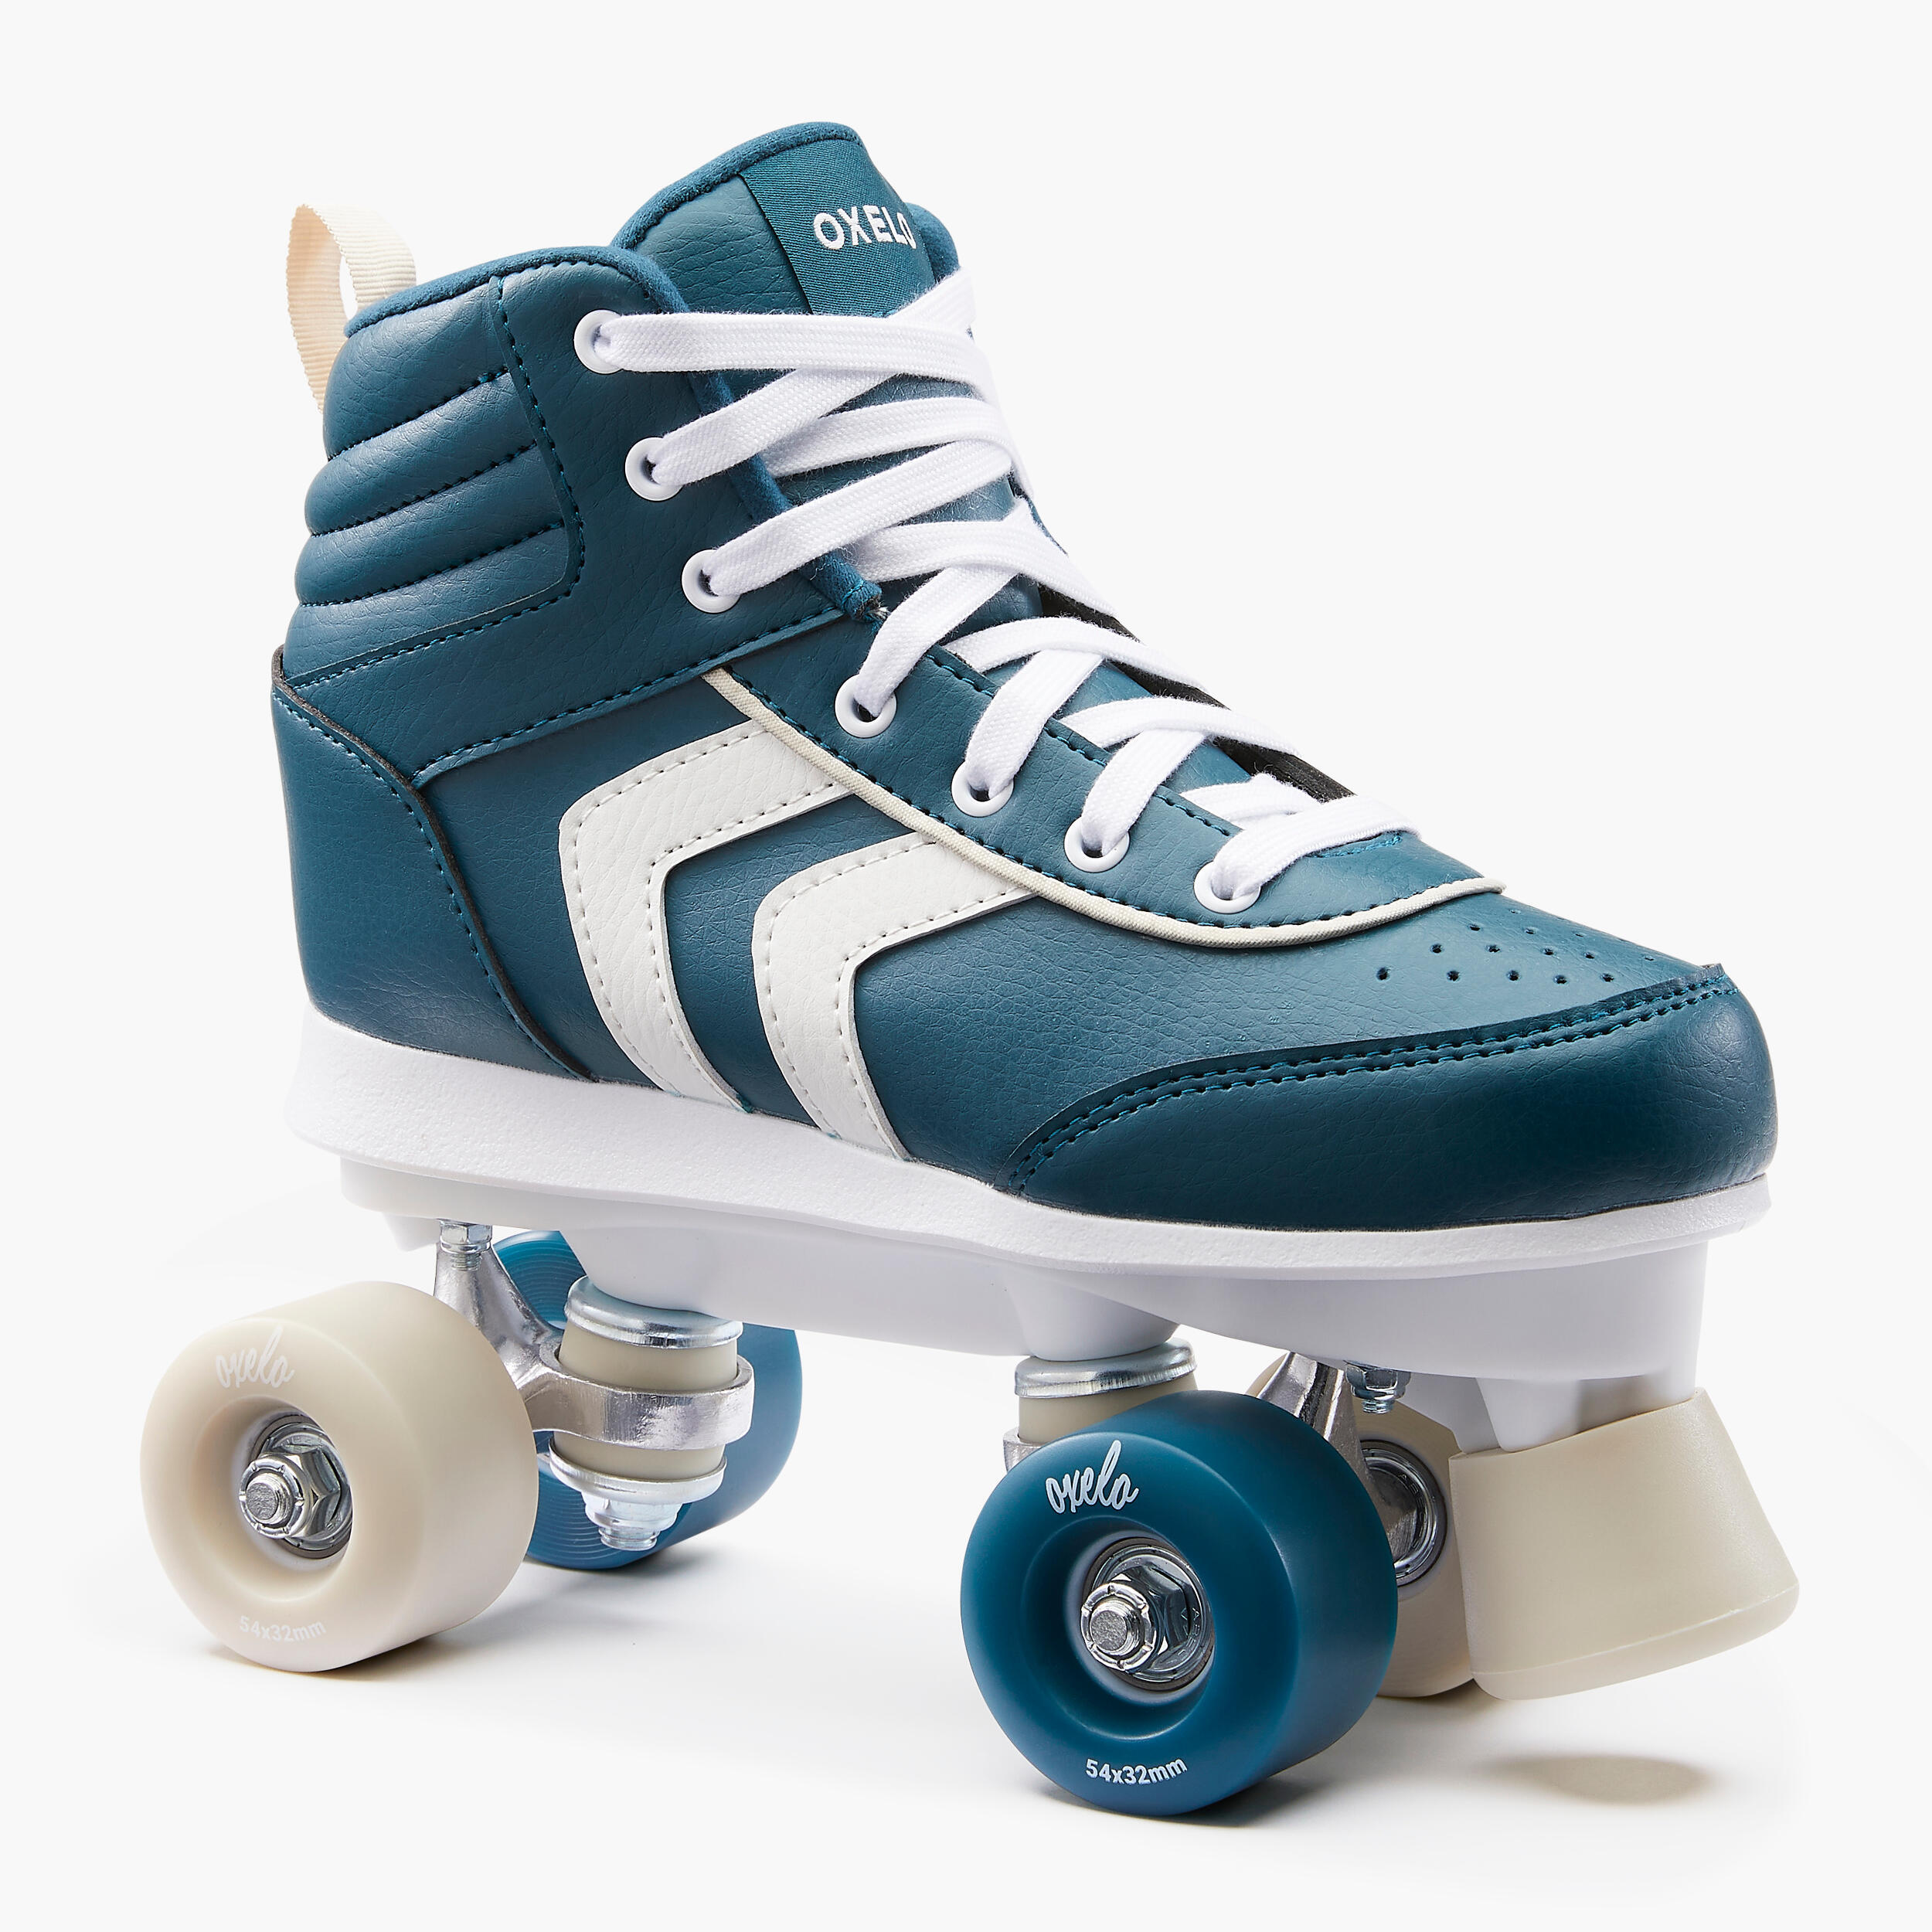 Kids' Roller Skates Quad 100 - Navy Blue 4/11